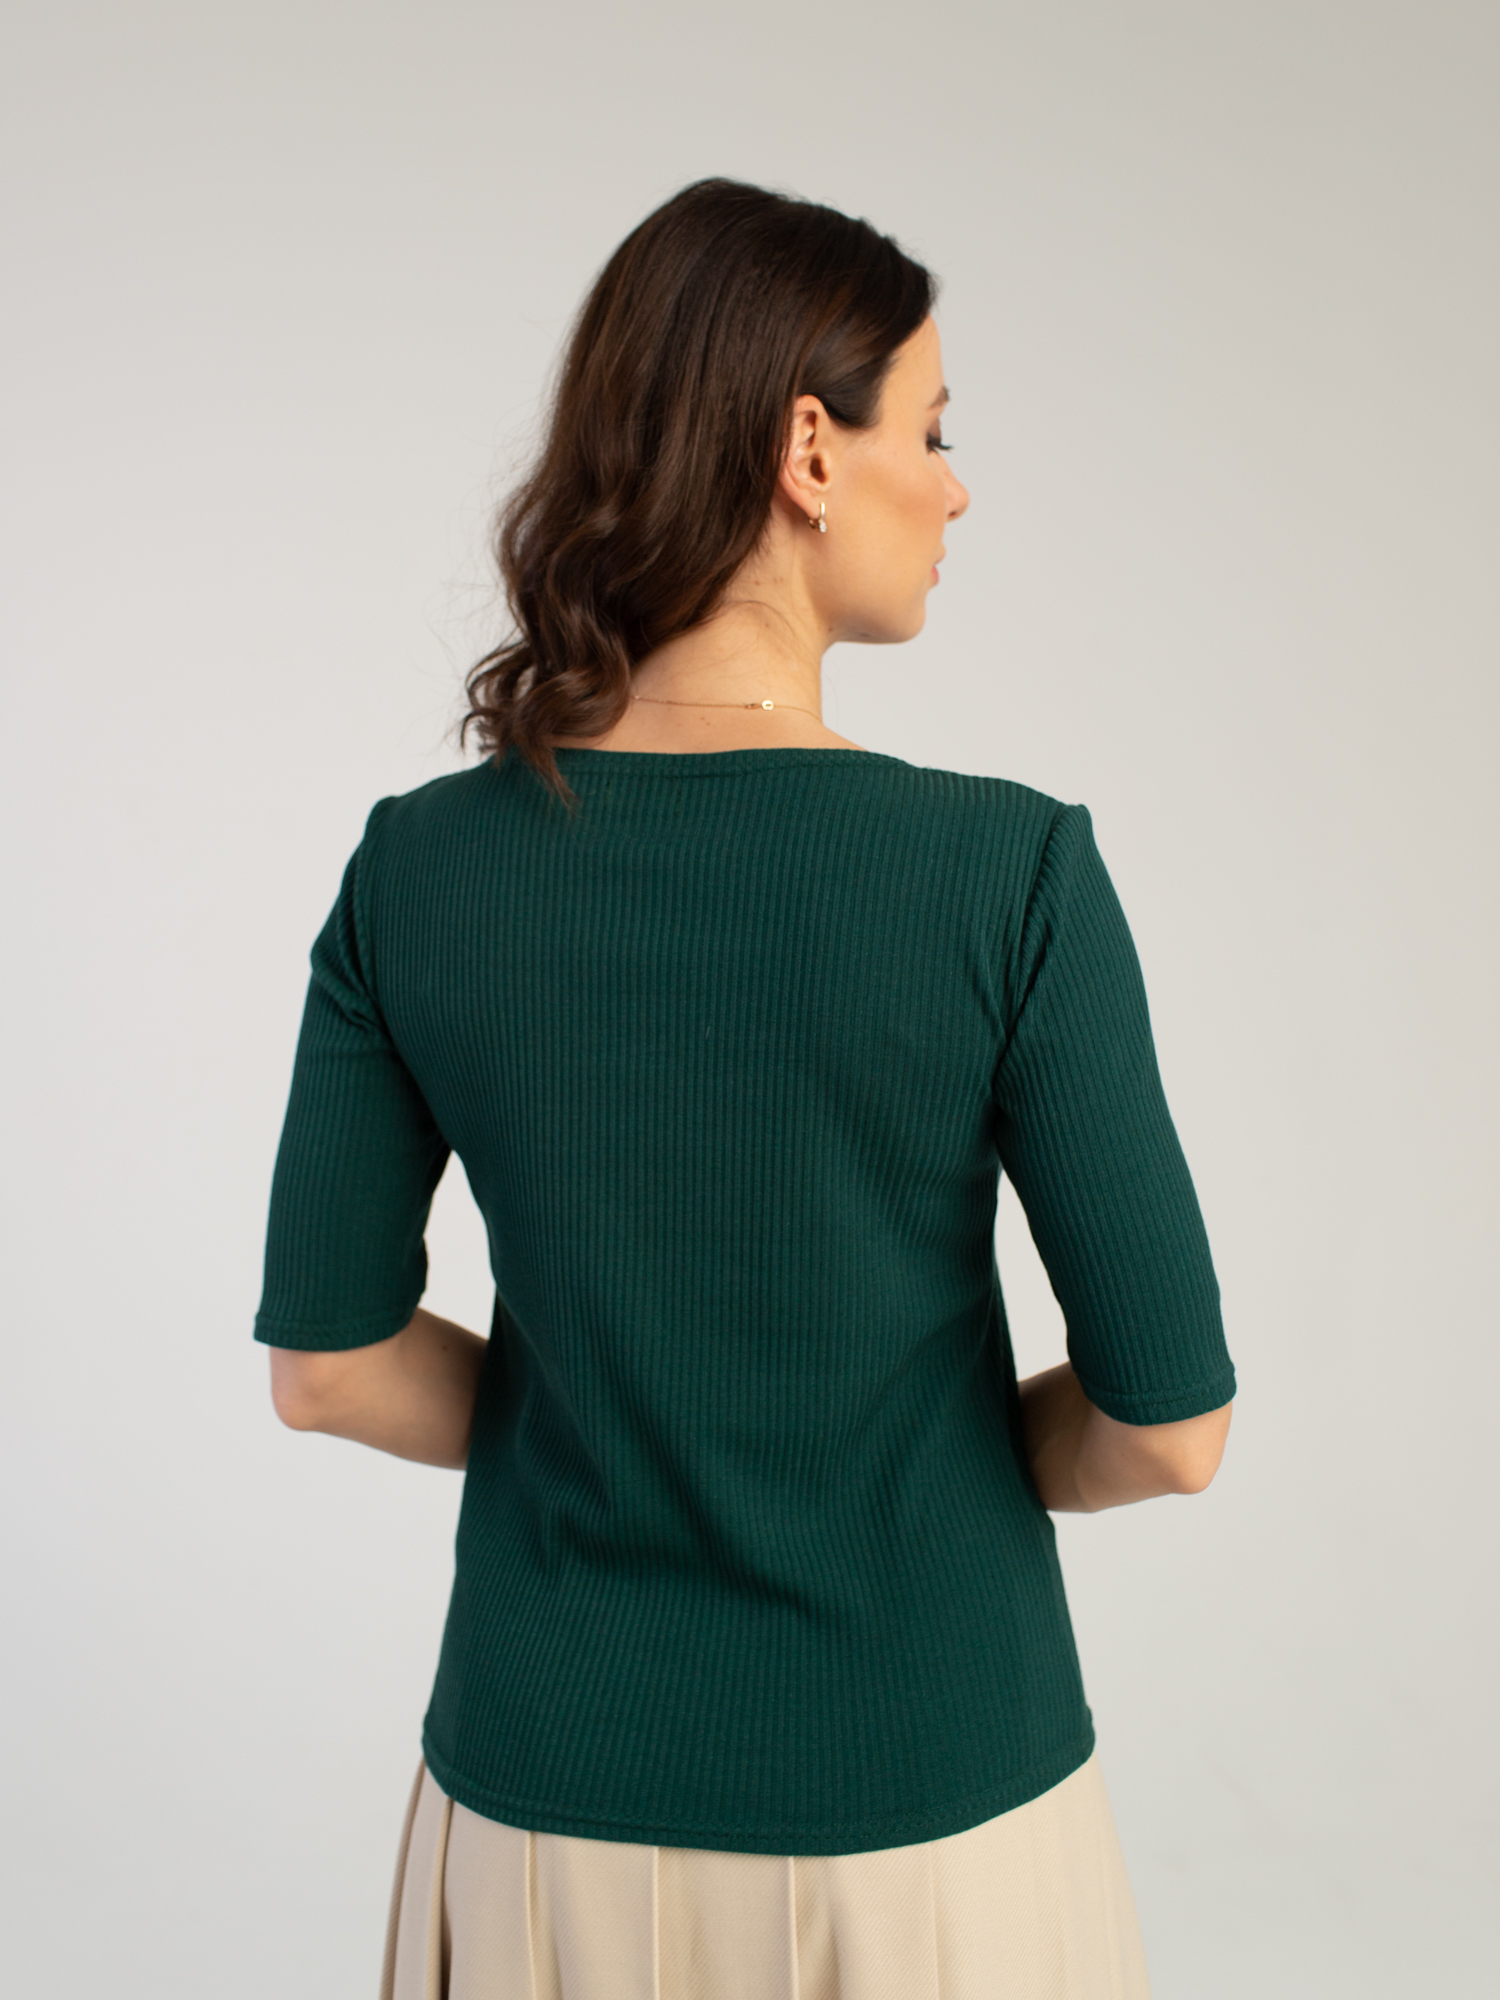 Женская одежда, топ, артикул: 038-0460, Цвет: зеленый,  Фабрика Трика, фото №1